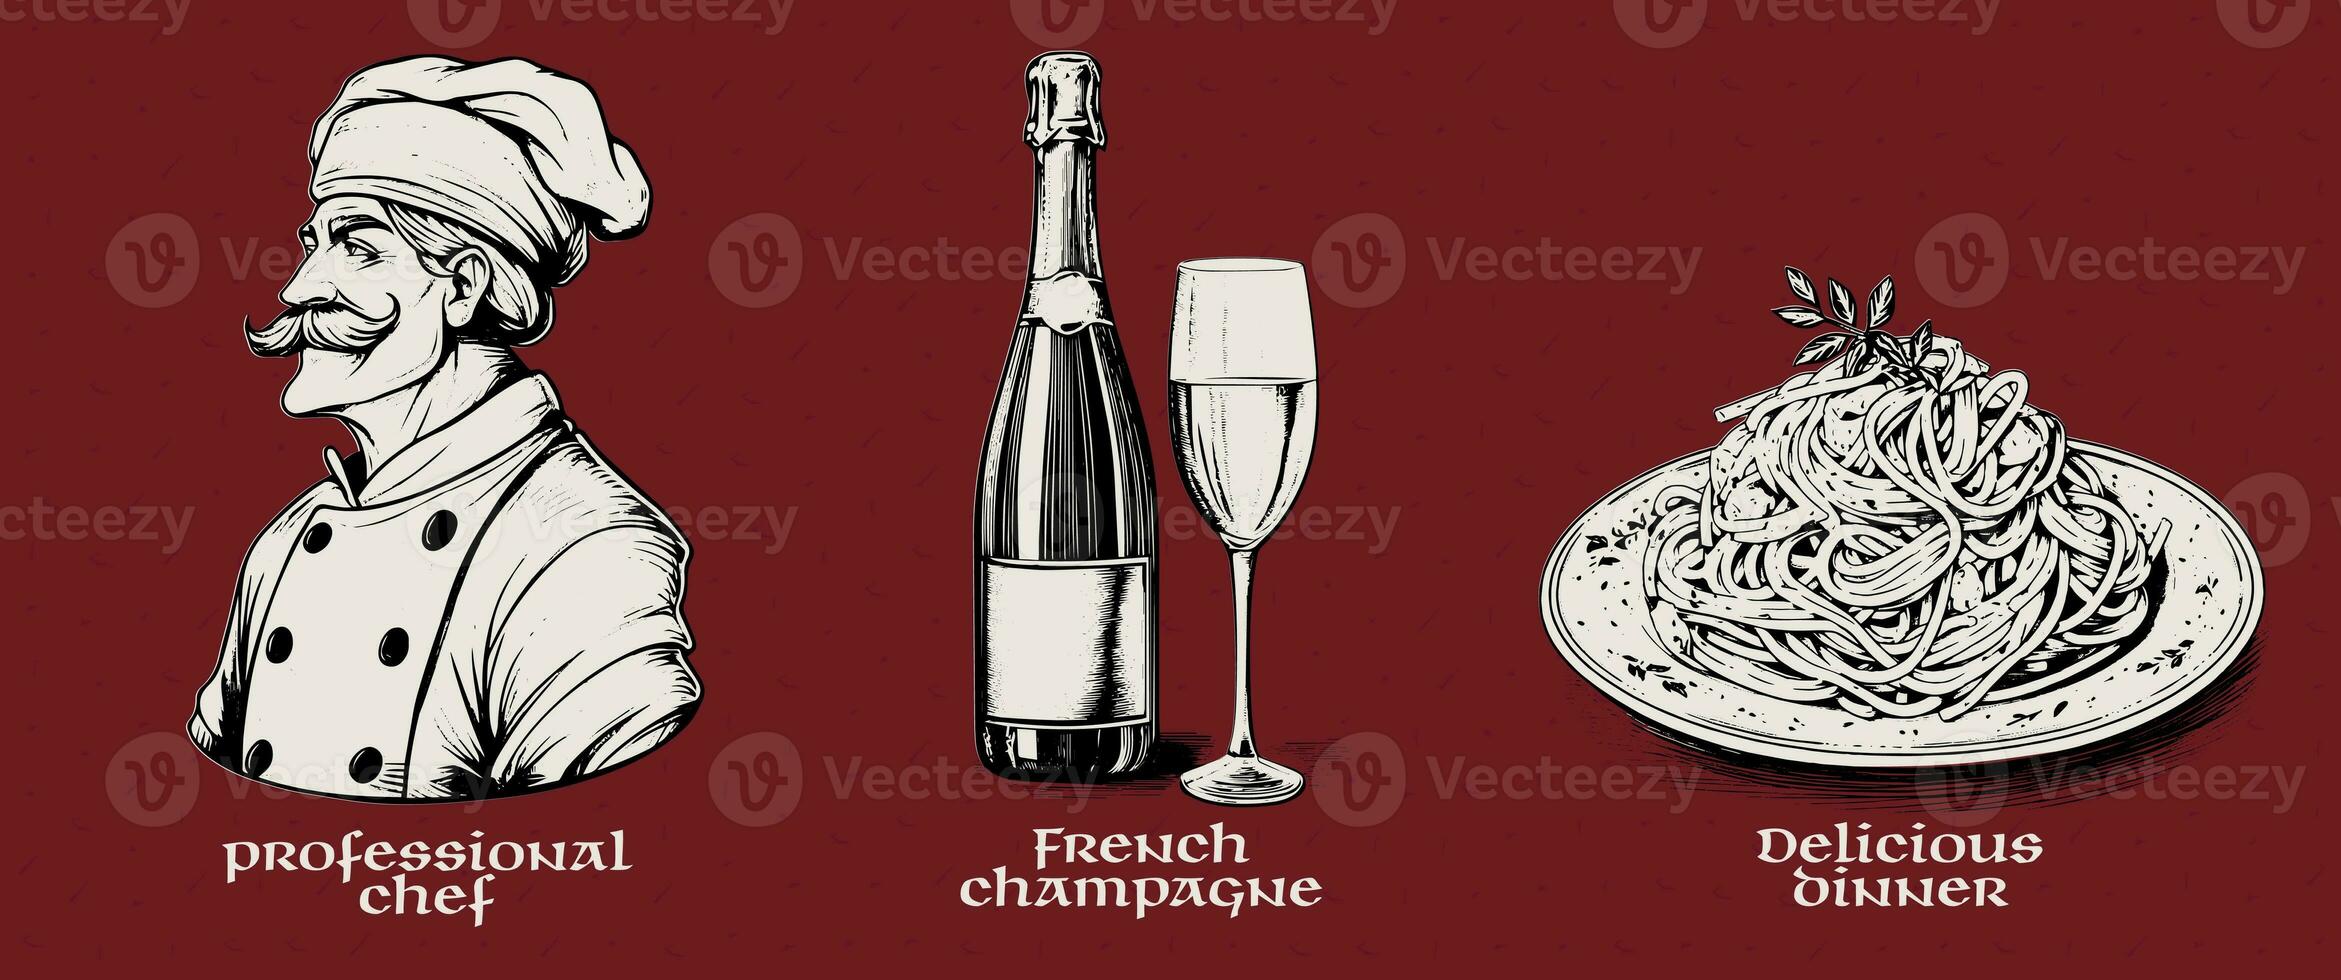 etsning uppsättning av kock, champagne, pasta. vektor bläck skiss illustration i gravyr stil. foto